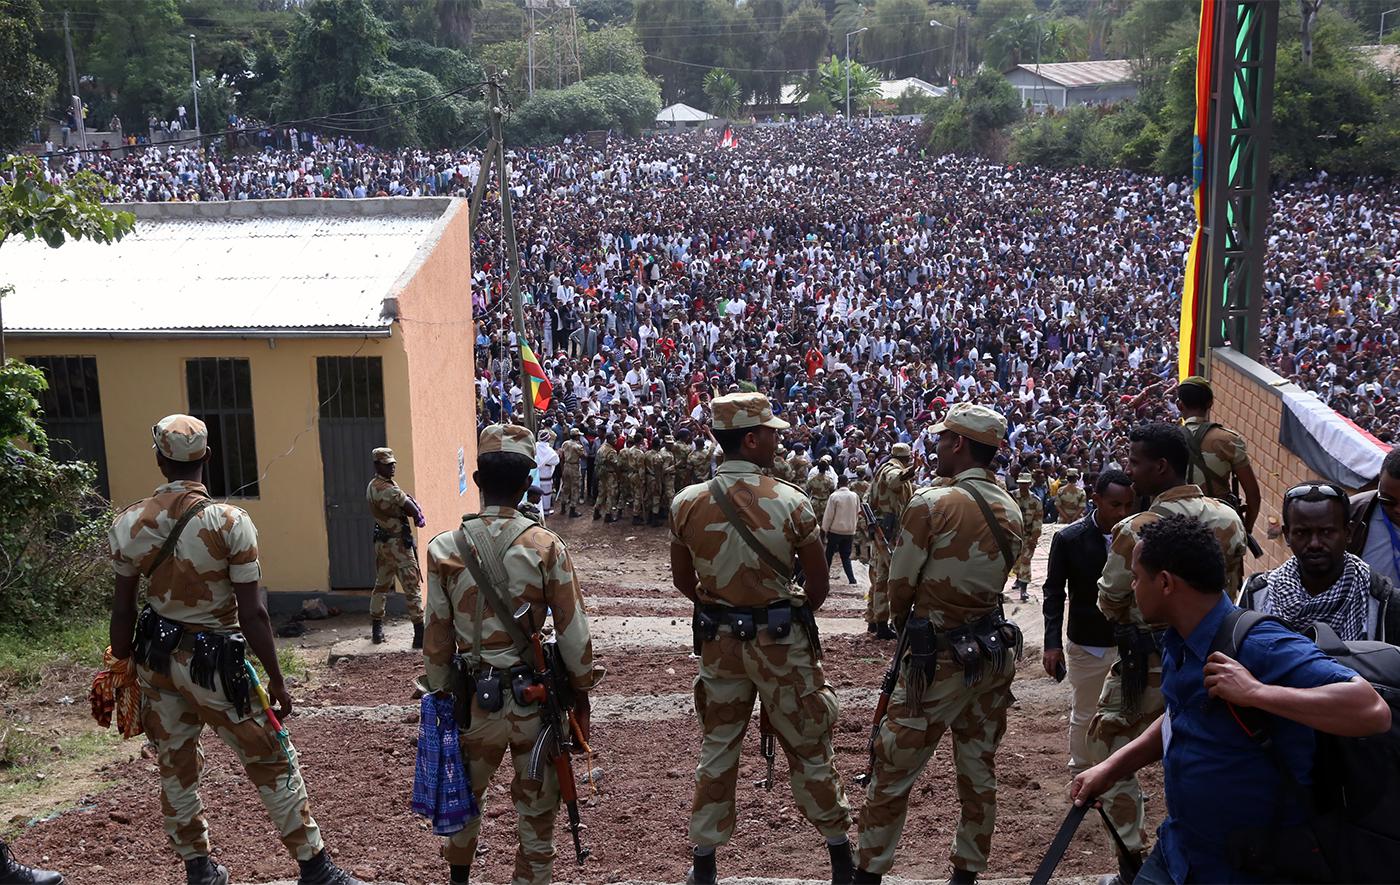 Des forces de sécurité éthiopiennes armée surveillent la foule rassemblée lors d’une manifestation antigouvernementale lors du festival culturel « Irreechaa » à Bishoftu (région Oromia), en Éthiopie, le 2 octobre 2016.